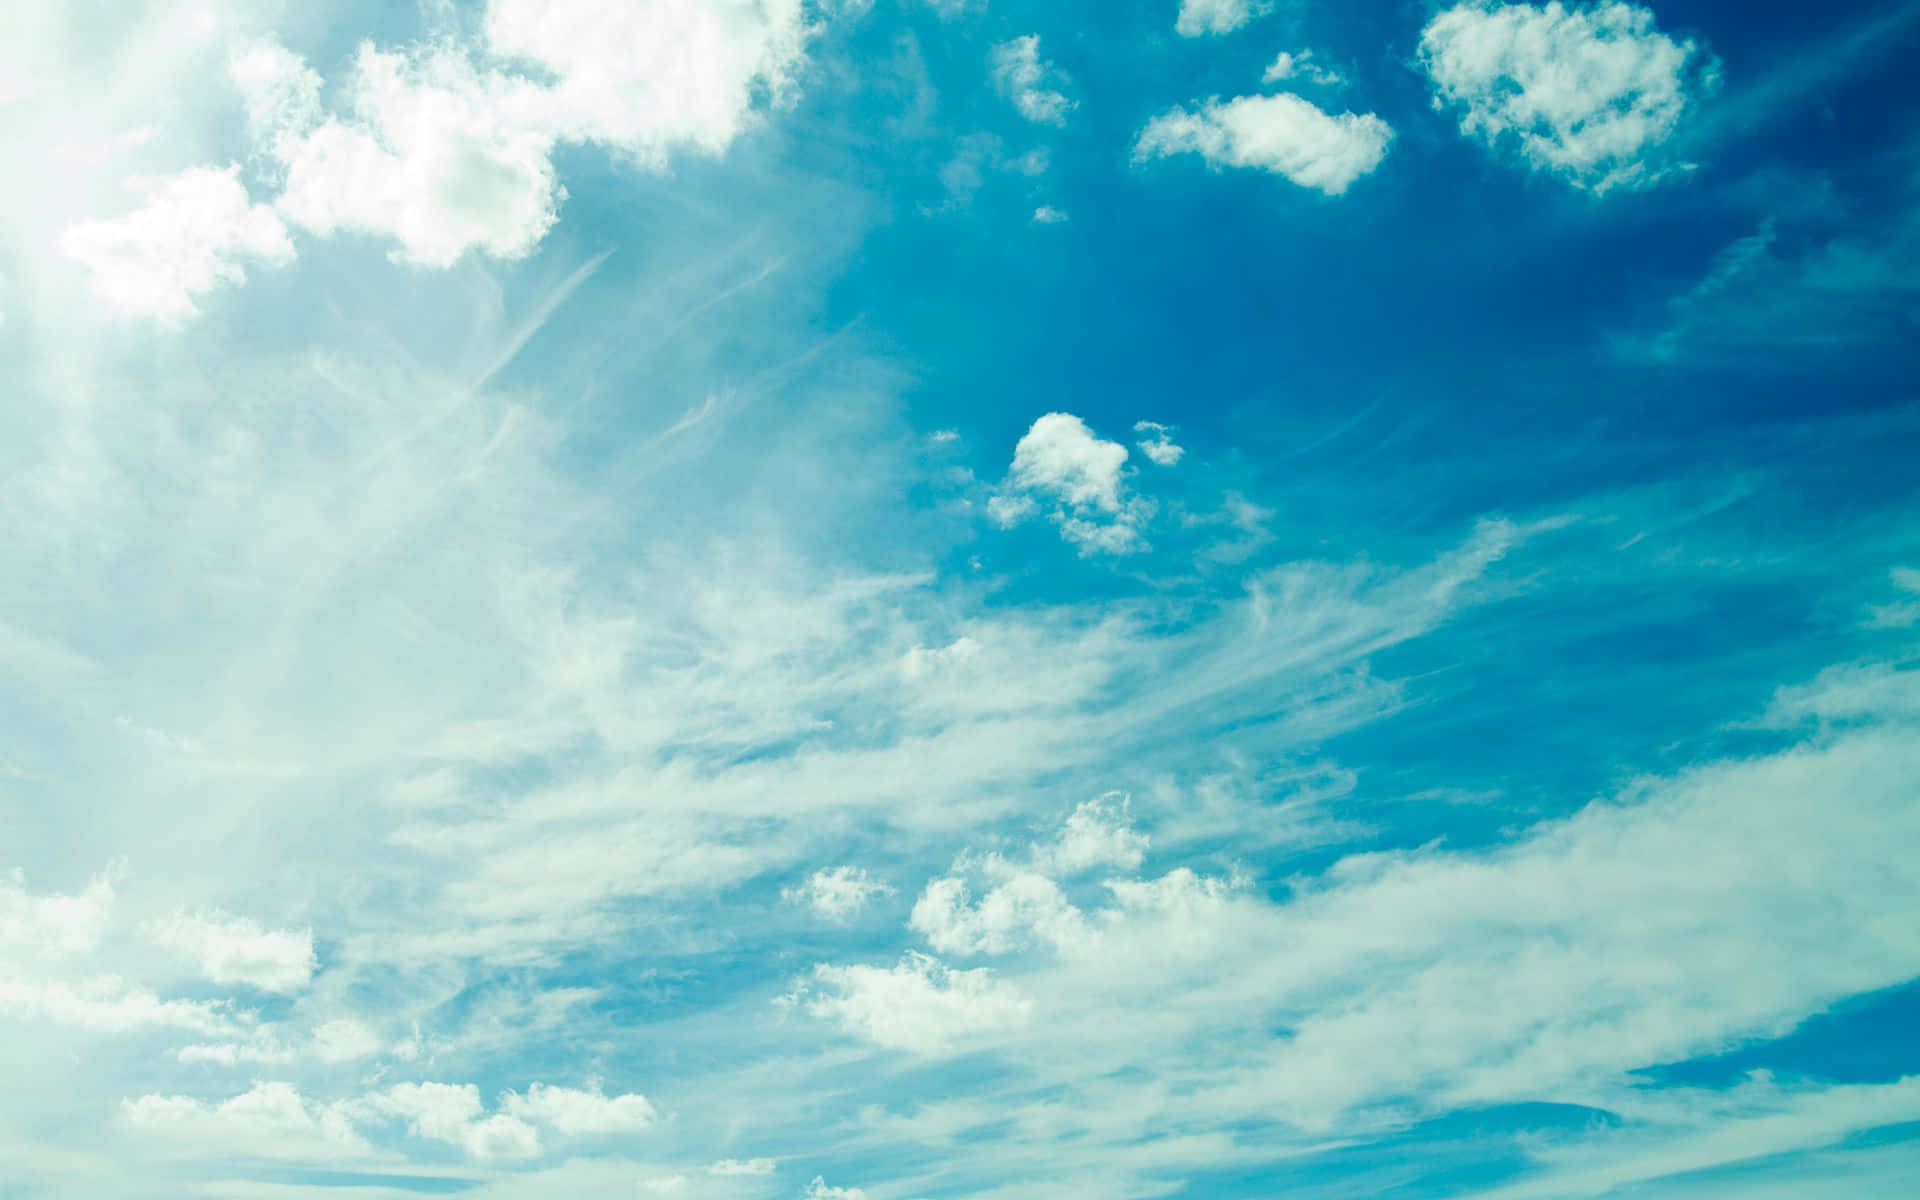 Anime Sky Wallpaper - Con đường dẫn đến thiên đường nơi những cơn gió ấm bay lượn giữa những đám mây mịn màng. Hãy trang trí màn hình của bạn với bức ảnh Anime Sky Wallpaper đẹp như tranh cổ với tông màu pastel nhẹ nhàng. Hãy xem hình ảnh này để mang đội mây trên màn hình của bạn.